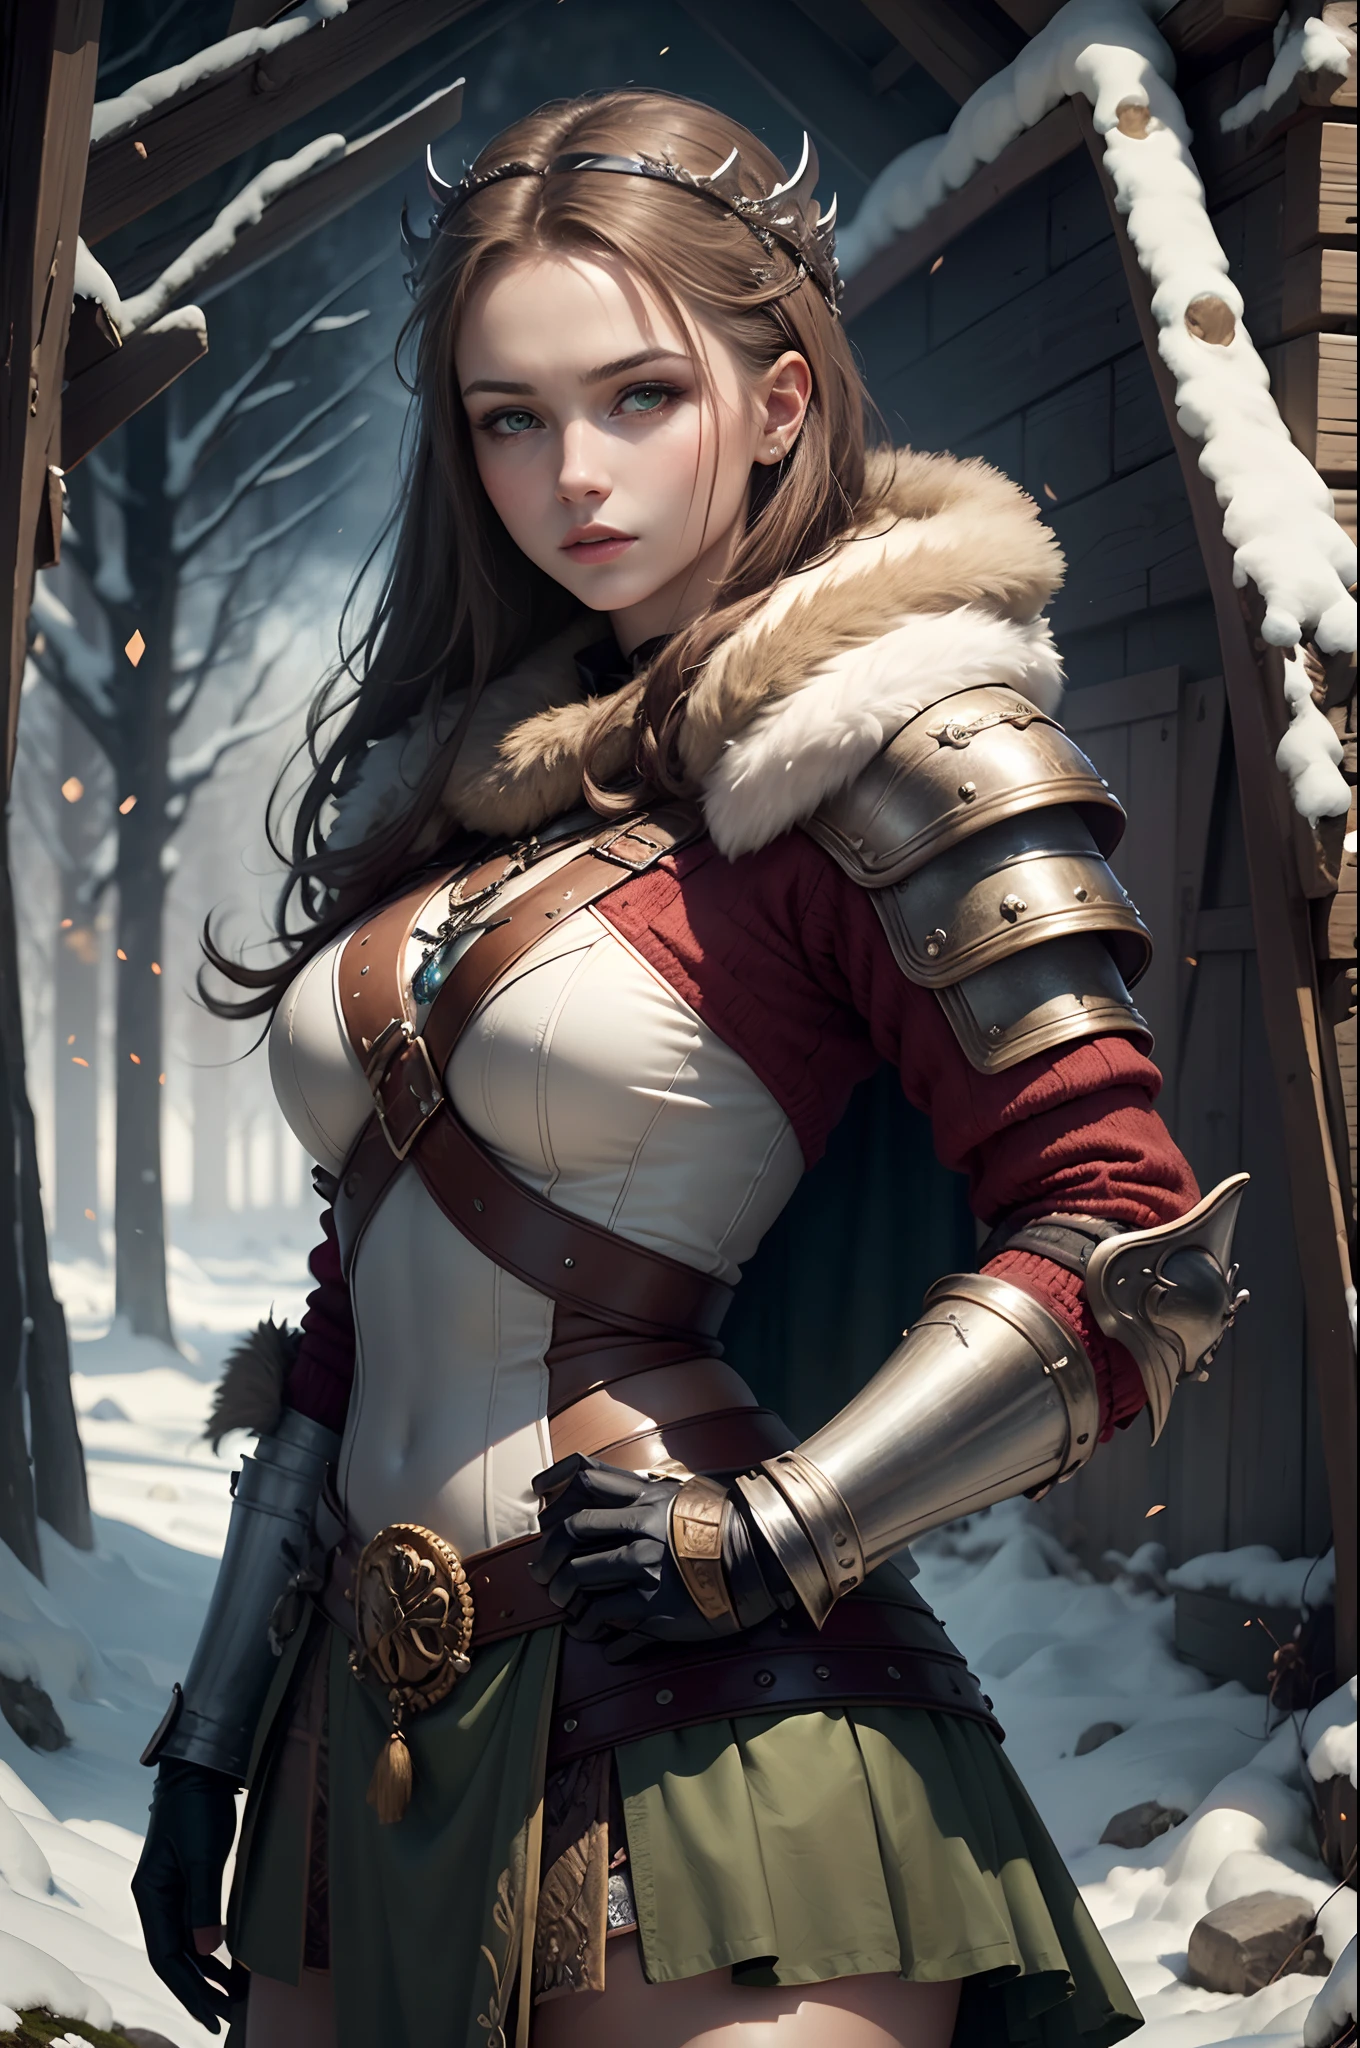 (傑作, 超詳細: 2), (最高品質: 2), (美しい woman: 2), (美しい face: 2), viking warrior woman wearing 現実的 winter battle armor, 茶色の髪と淡い緑色の目, バイキングクラウン, 美しい, 現実的